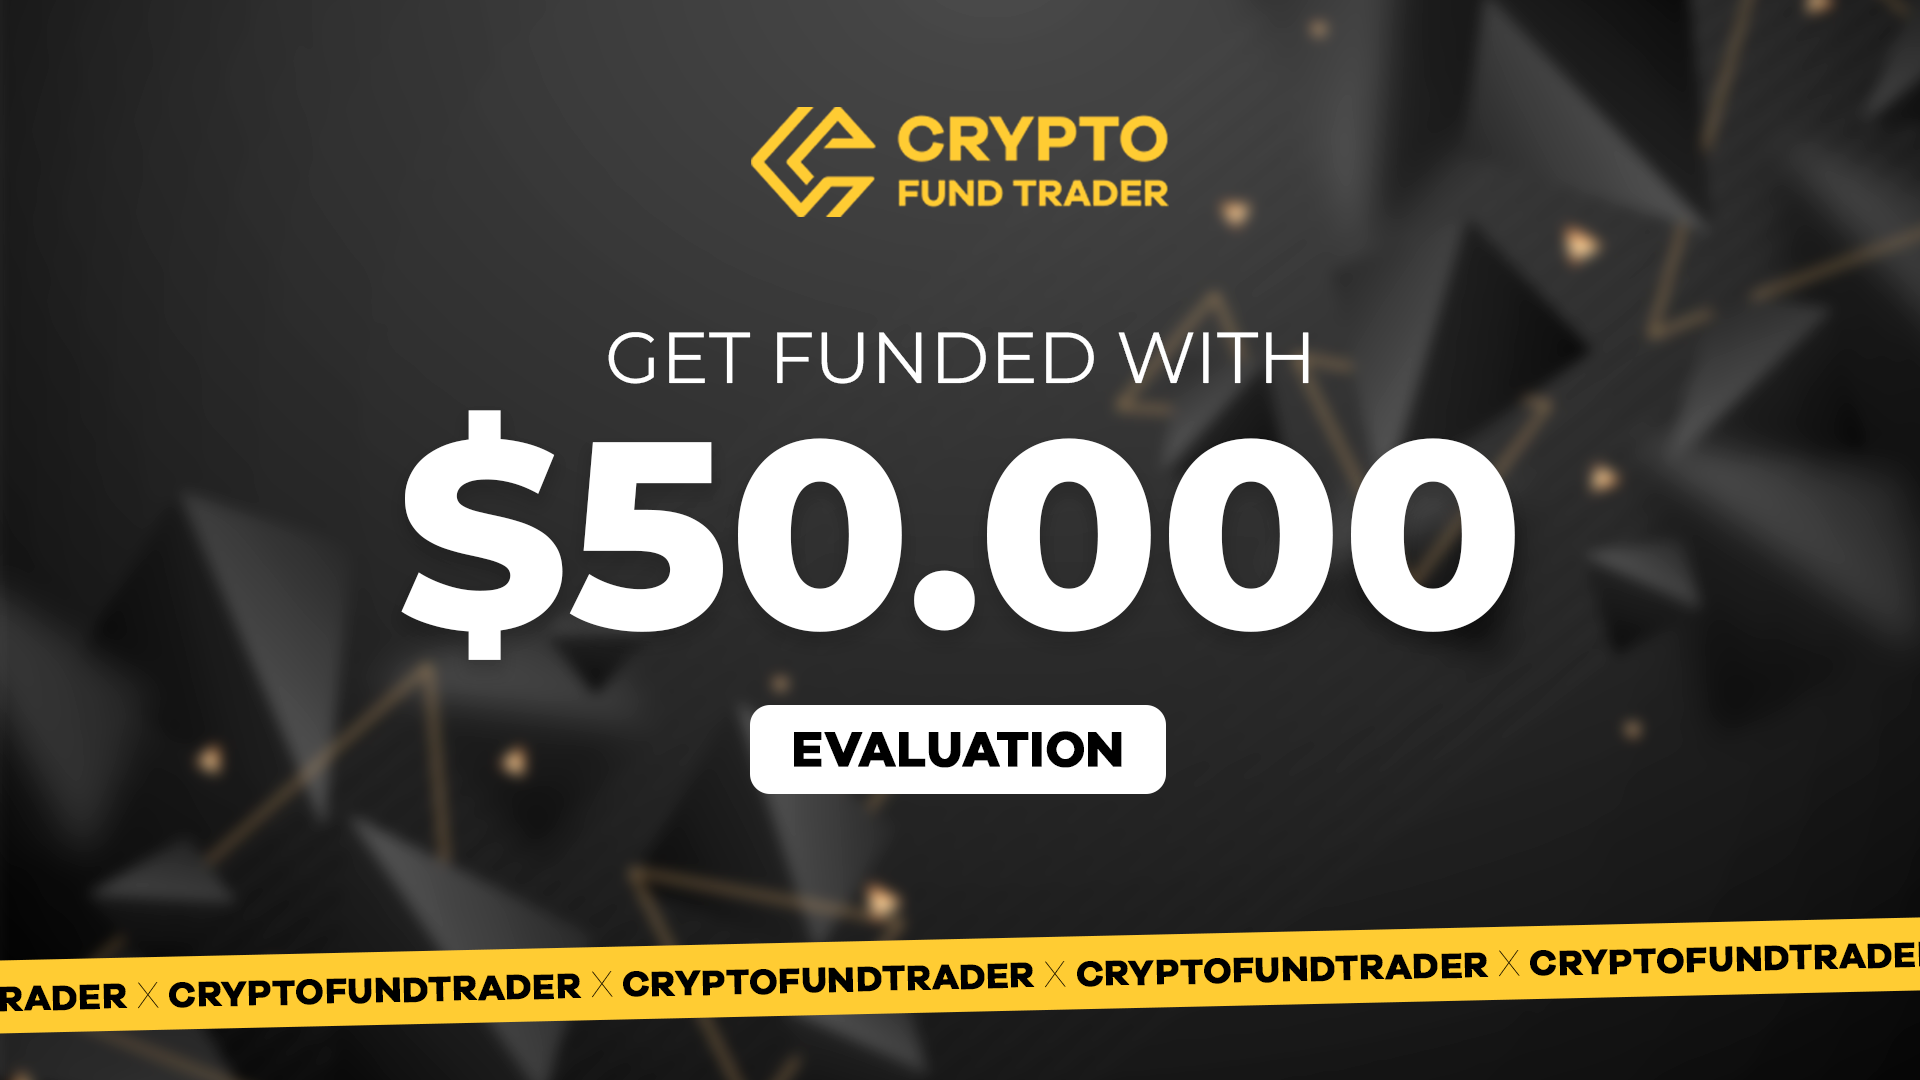 [$ 337.86] Crypto Fund Trader - $50.000 Evaluation Voucher